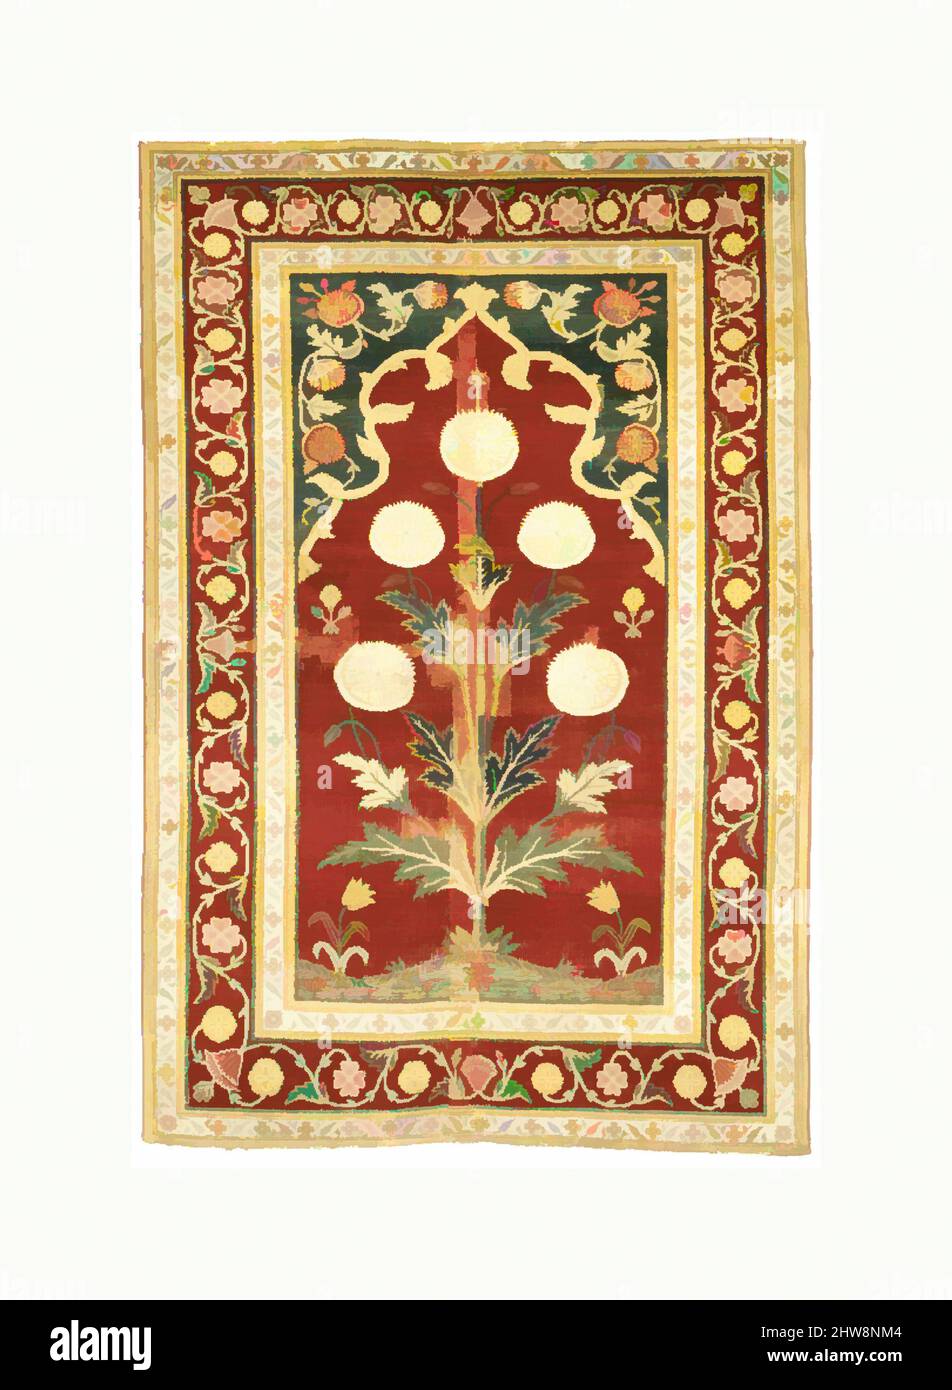 Arte ispirata da Carpet con Niche e Flower Design, metà del 17th secolo, made in India o Pakistan, Kashmir o Lahore, cotone (ordito e trama), seta (trama), lana (pile); pelo asimmetricamente annodato, tessile: L. 61 in. (154,9 cm), tessuti-tappeti, questa tessitura fa parte di un gruppo che utilizza, opere classiche modernizzate da Artotop con un tuffo di modernità. Forme, colore e valore, impatto visivo accattivante sulle emozioni artistiche attraverso la libertà delle opere d'arte in modo contemporaneo. Un messaggio senza tempo che persegue una nuova direzione selvaggiamente creativa. Artisti che si rivolgono al supporto digitale e creano l'NFT Artotop Foto Stock